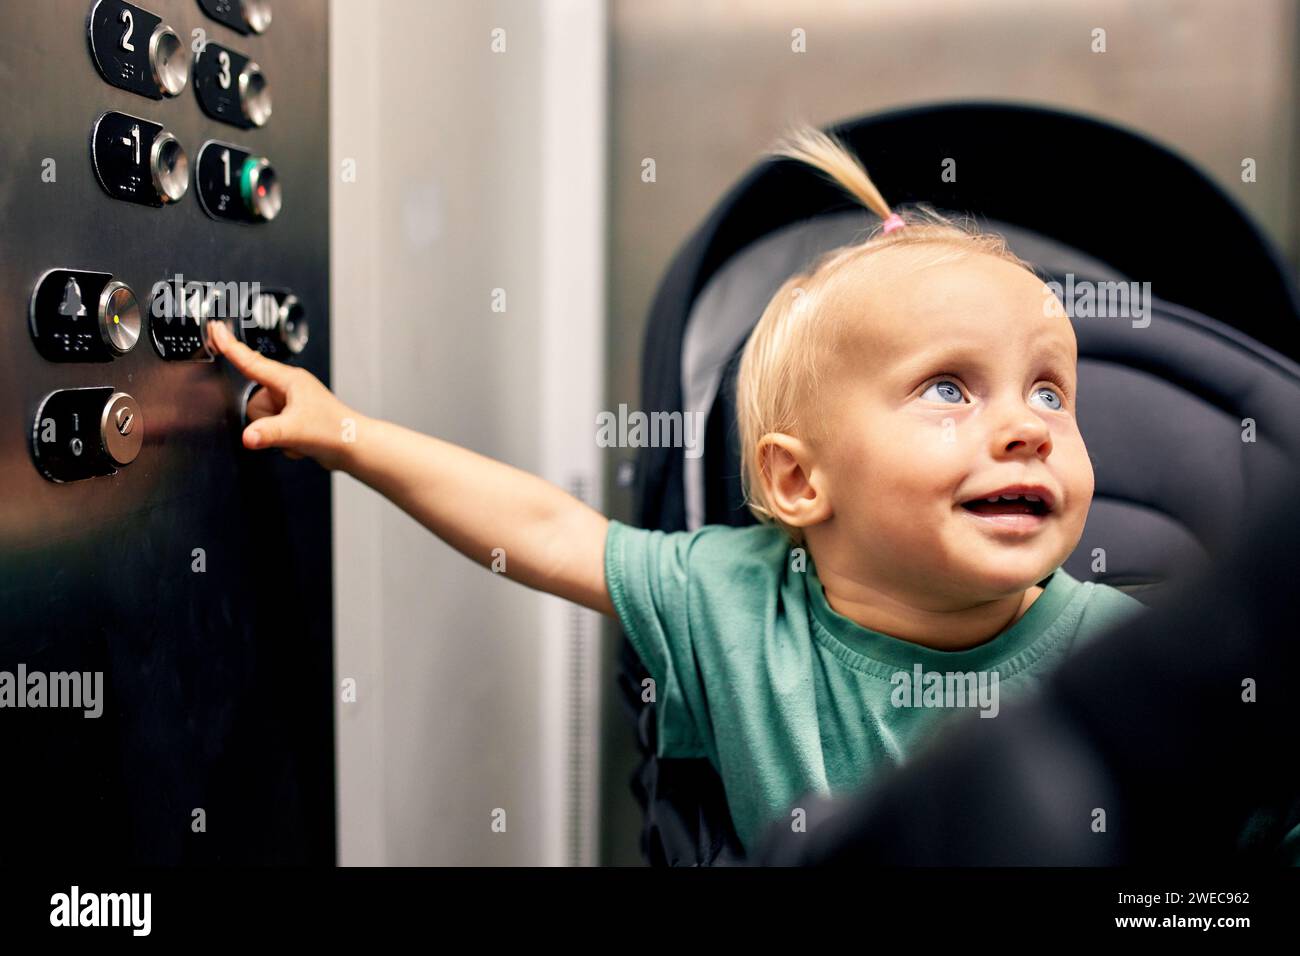 Petit bébé mignon assis dans une poussette de bébé appuie sur le bouton de plancher dans l'ascenseur. Une petite blonde dans une voiture monte ou descend l'ascenseur avec lui Banque D'Images